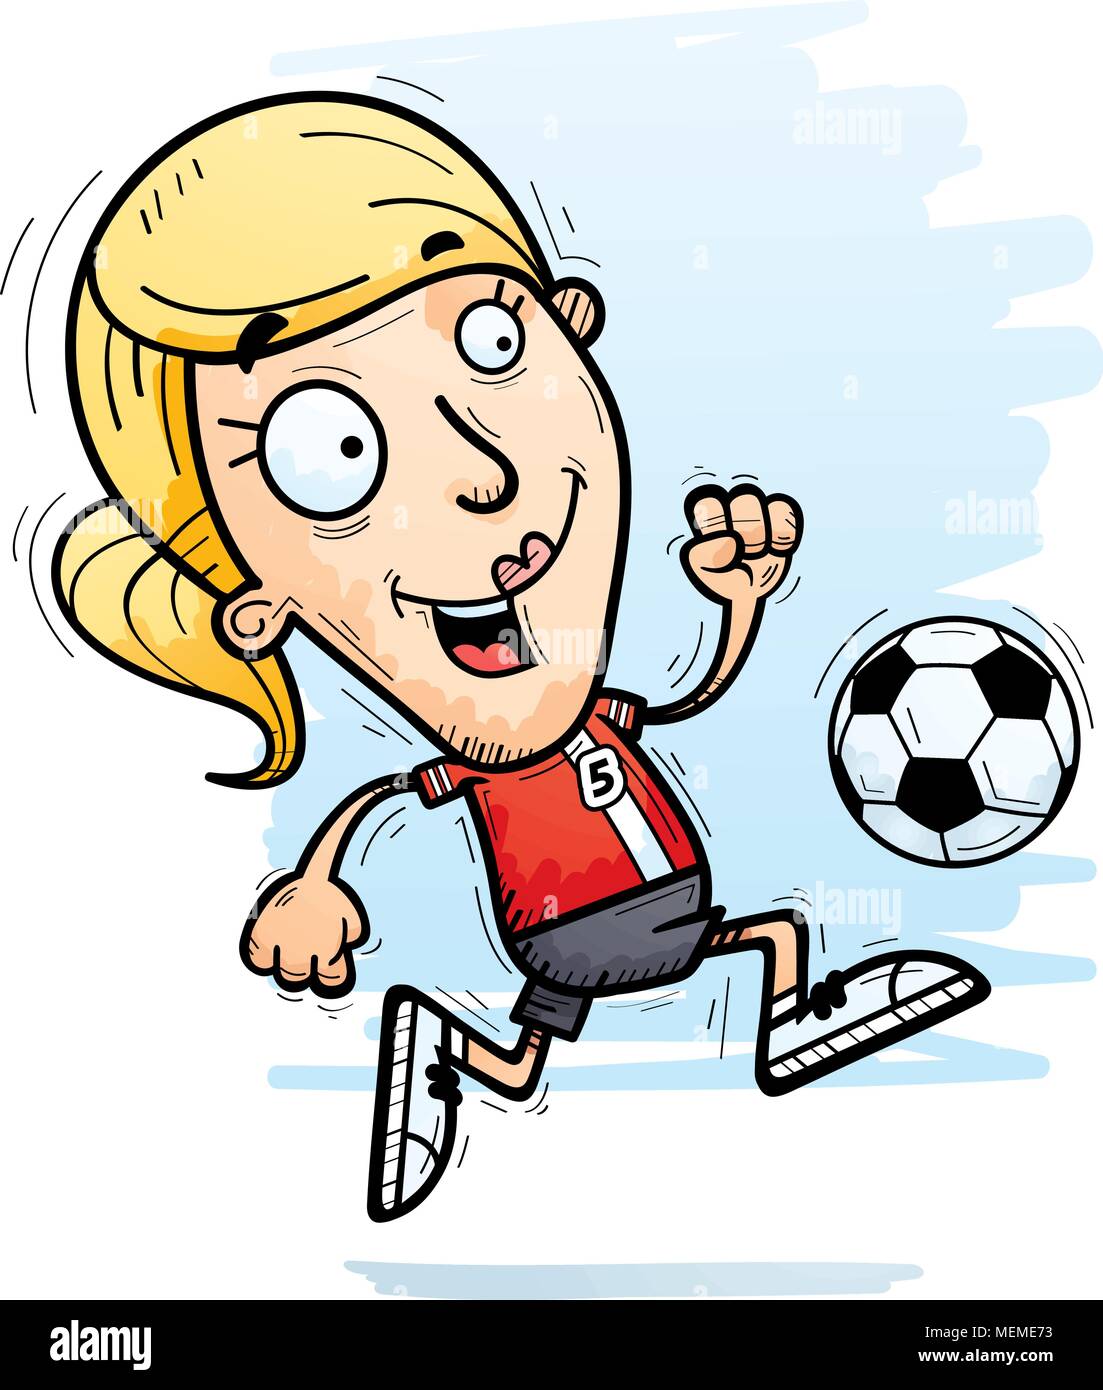 Illustration d'une caricature d'un joueur de soccer femme dribbler un ballon de soccer. Illustration de Vecteur